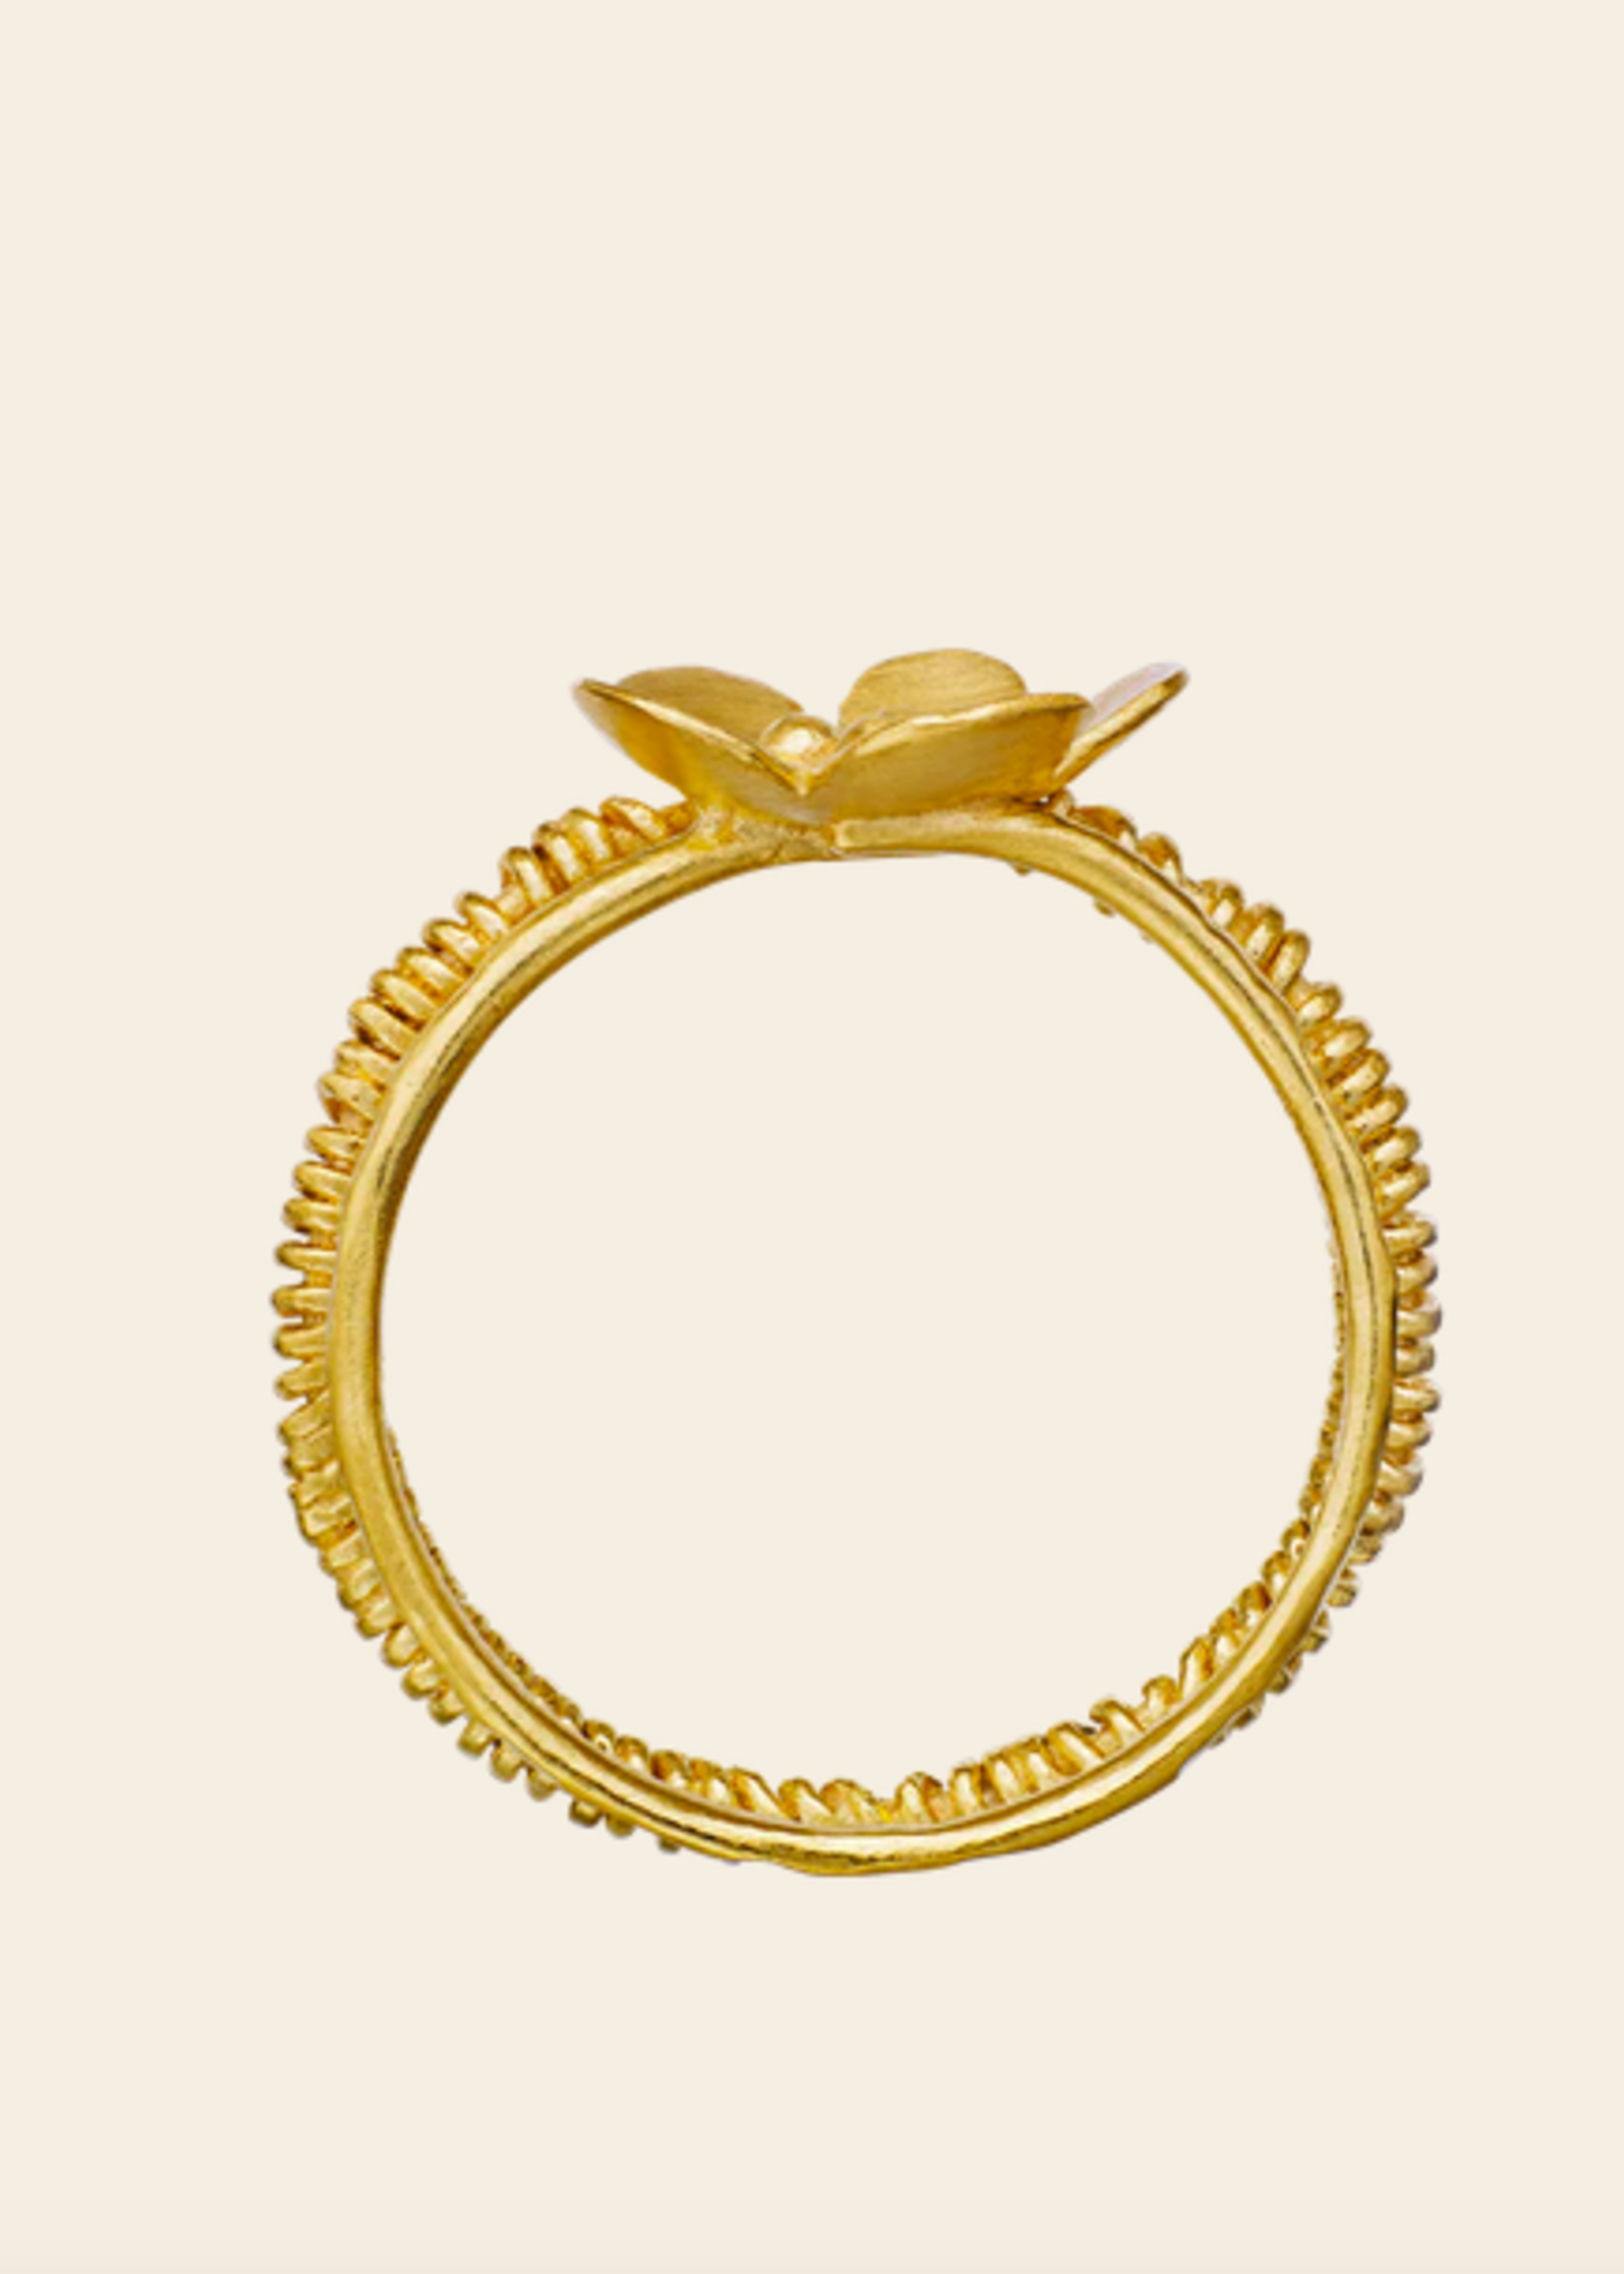 Maanesten Bellflower ring ( size 51 )